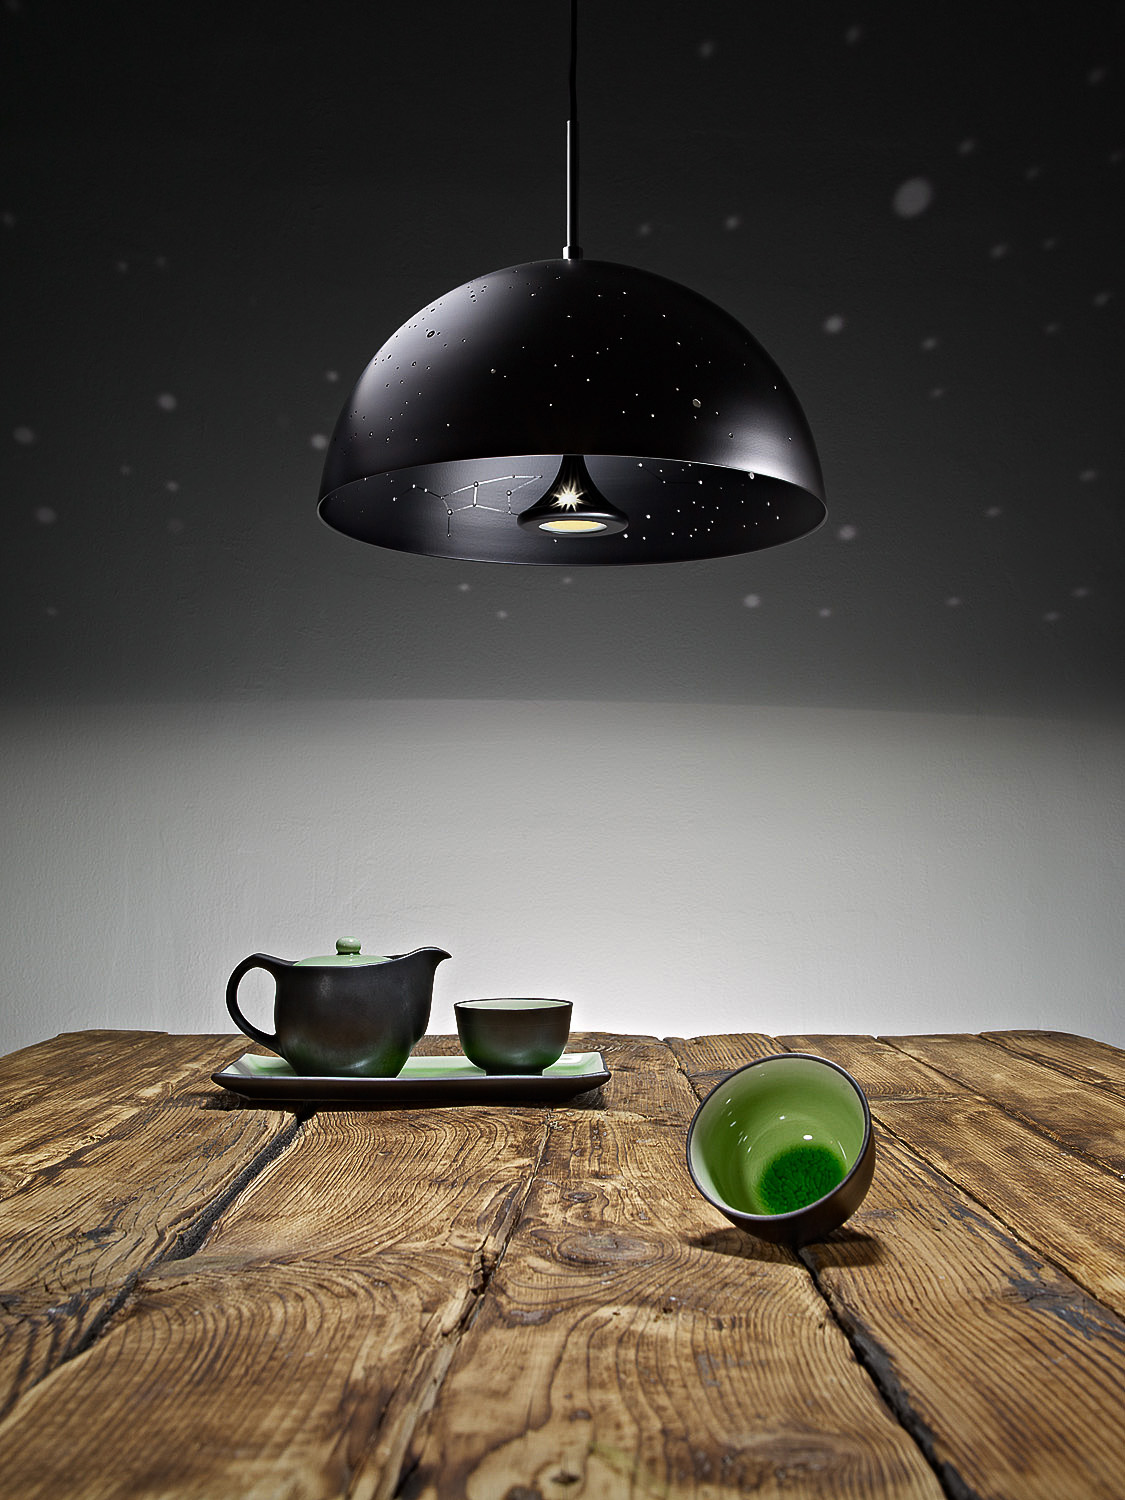  client: Starry Light | design by Anna Farkas  